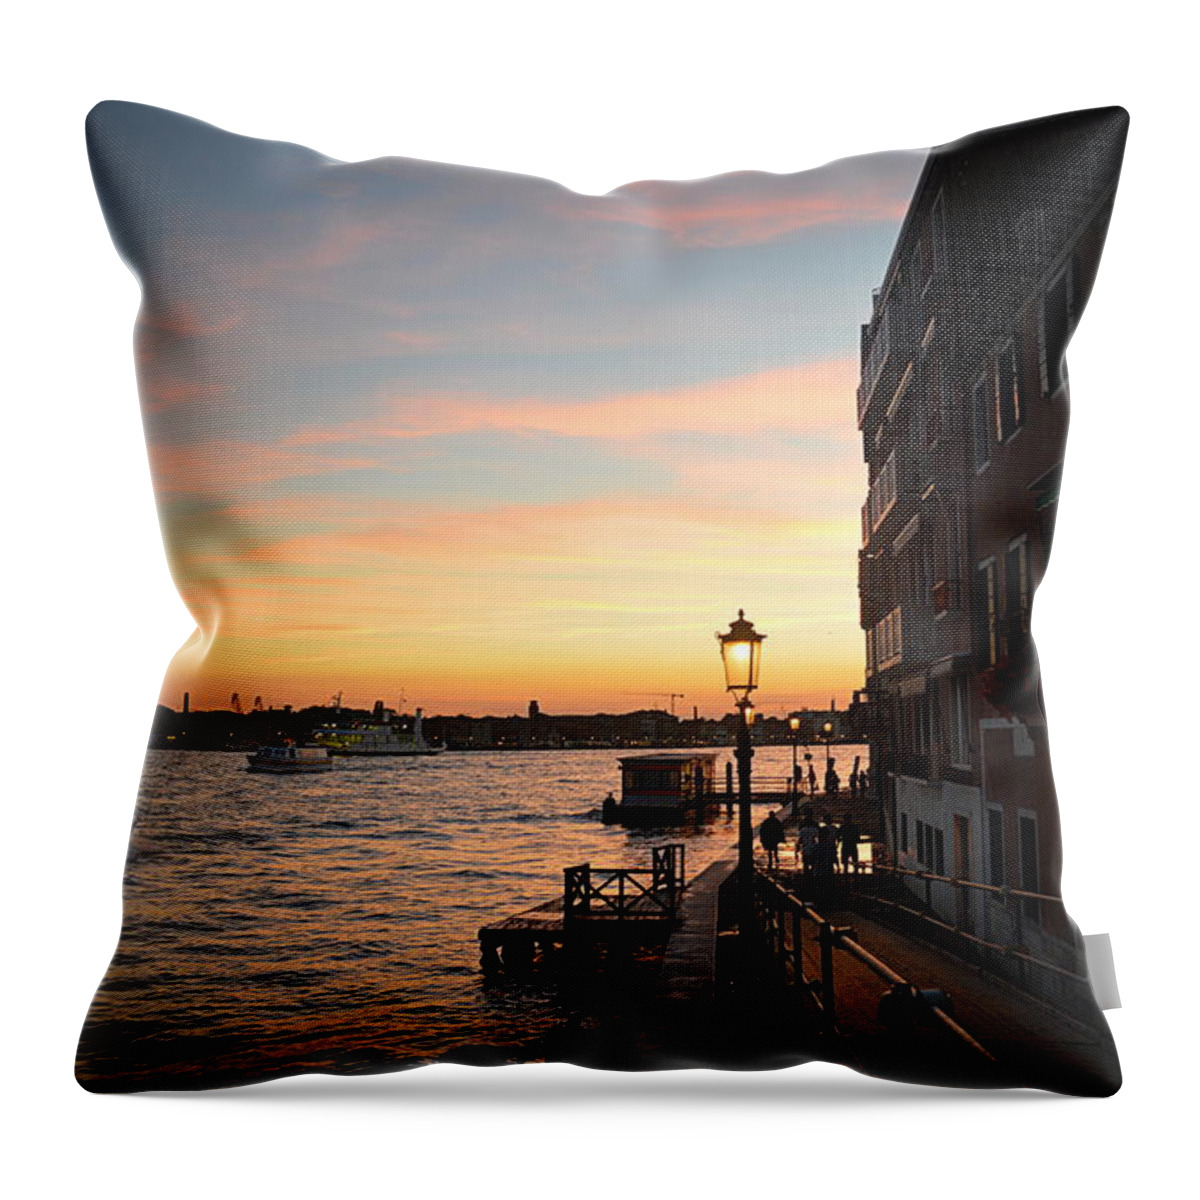 Venice Throw Pillow featuring the photograph Sunset Venice by Jonathan Kerckhaert